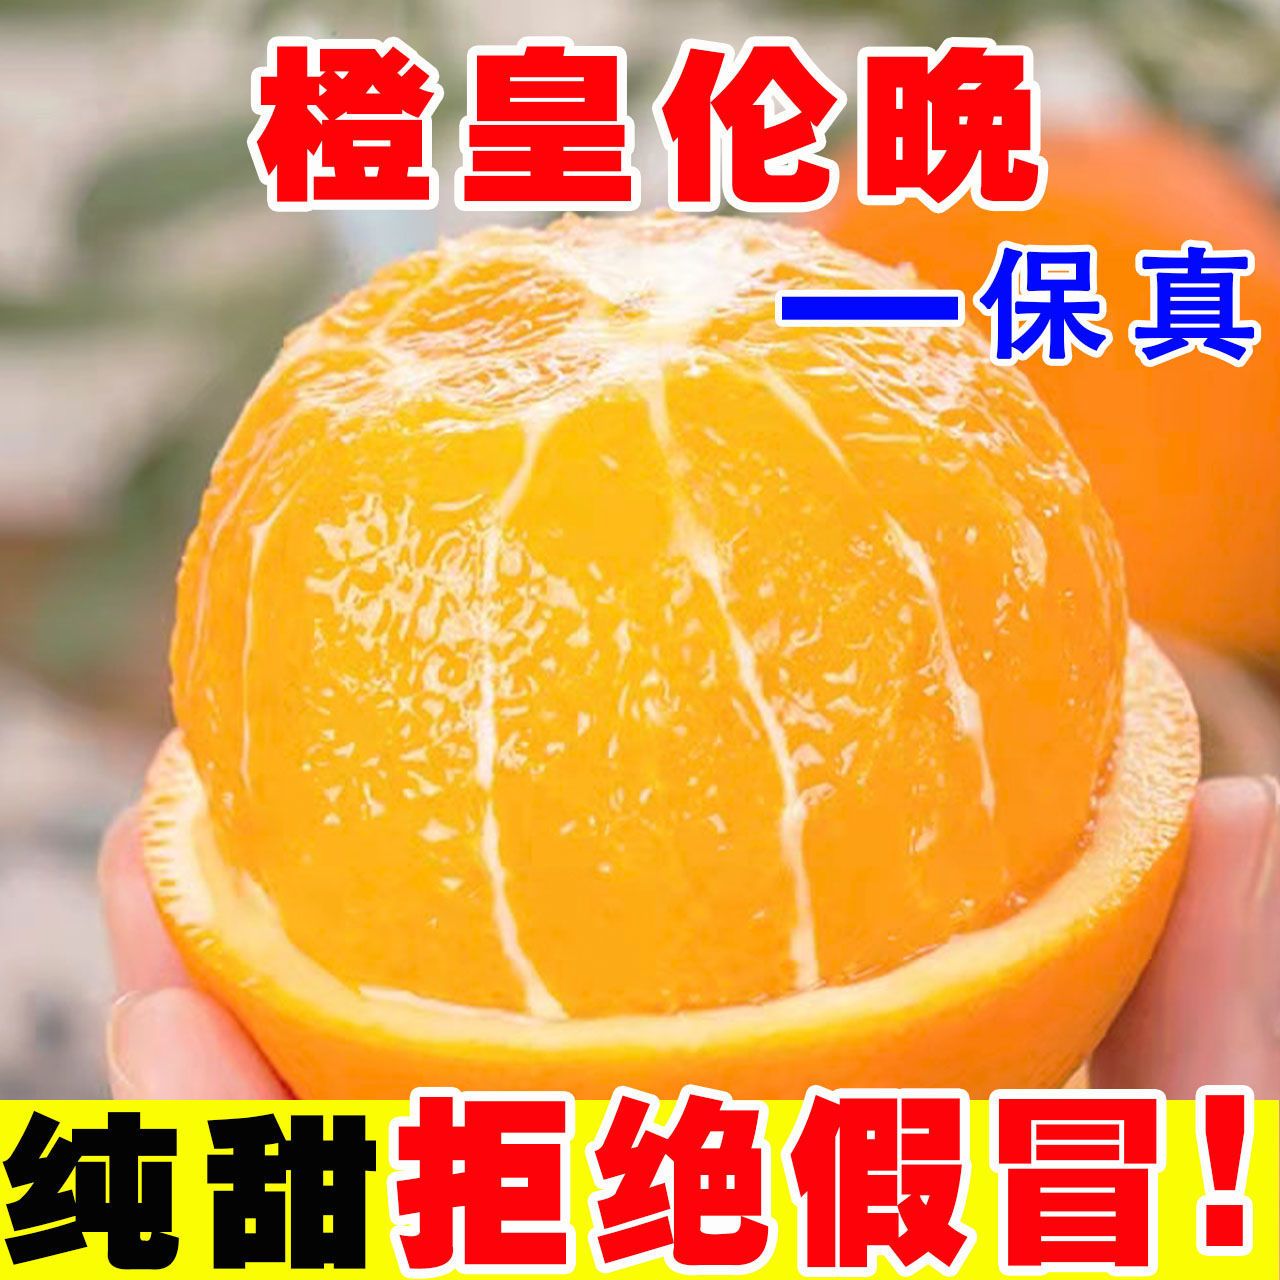 【精品特价】正宗秭归伦晚脐橙当季新鲜水果手剥橙子孕妇榨汁甜橙